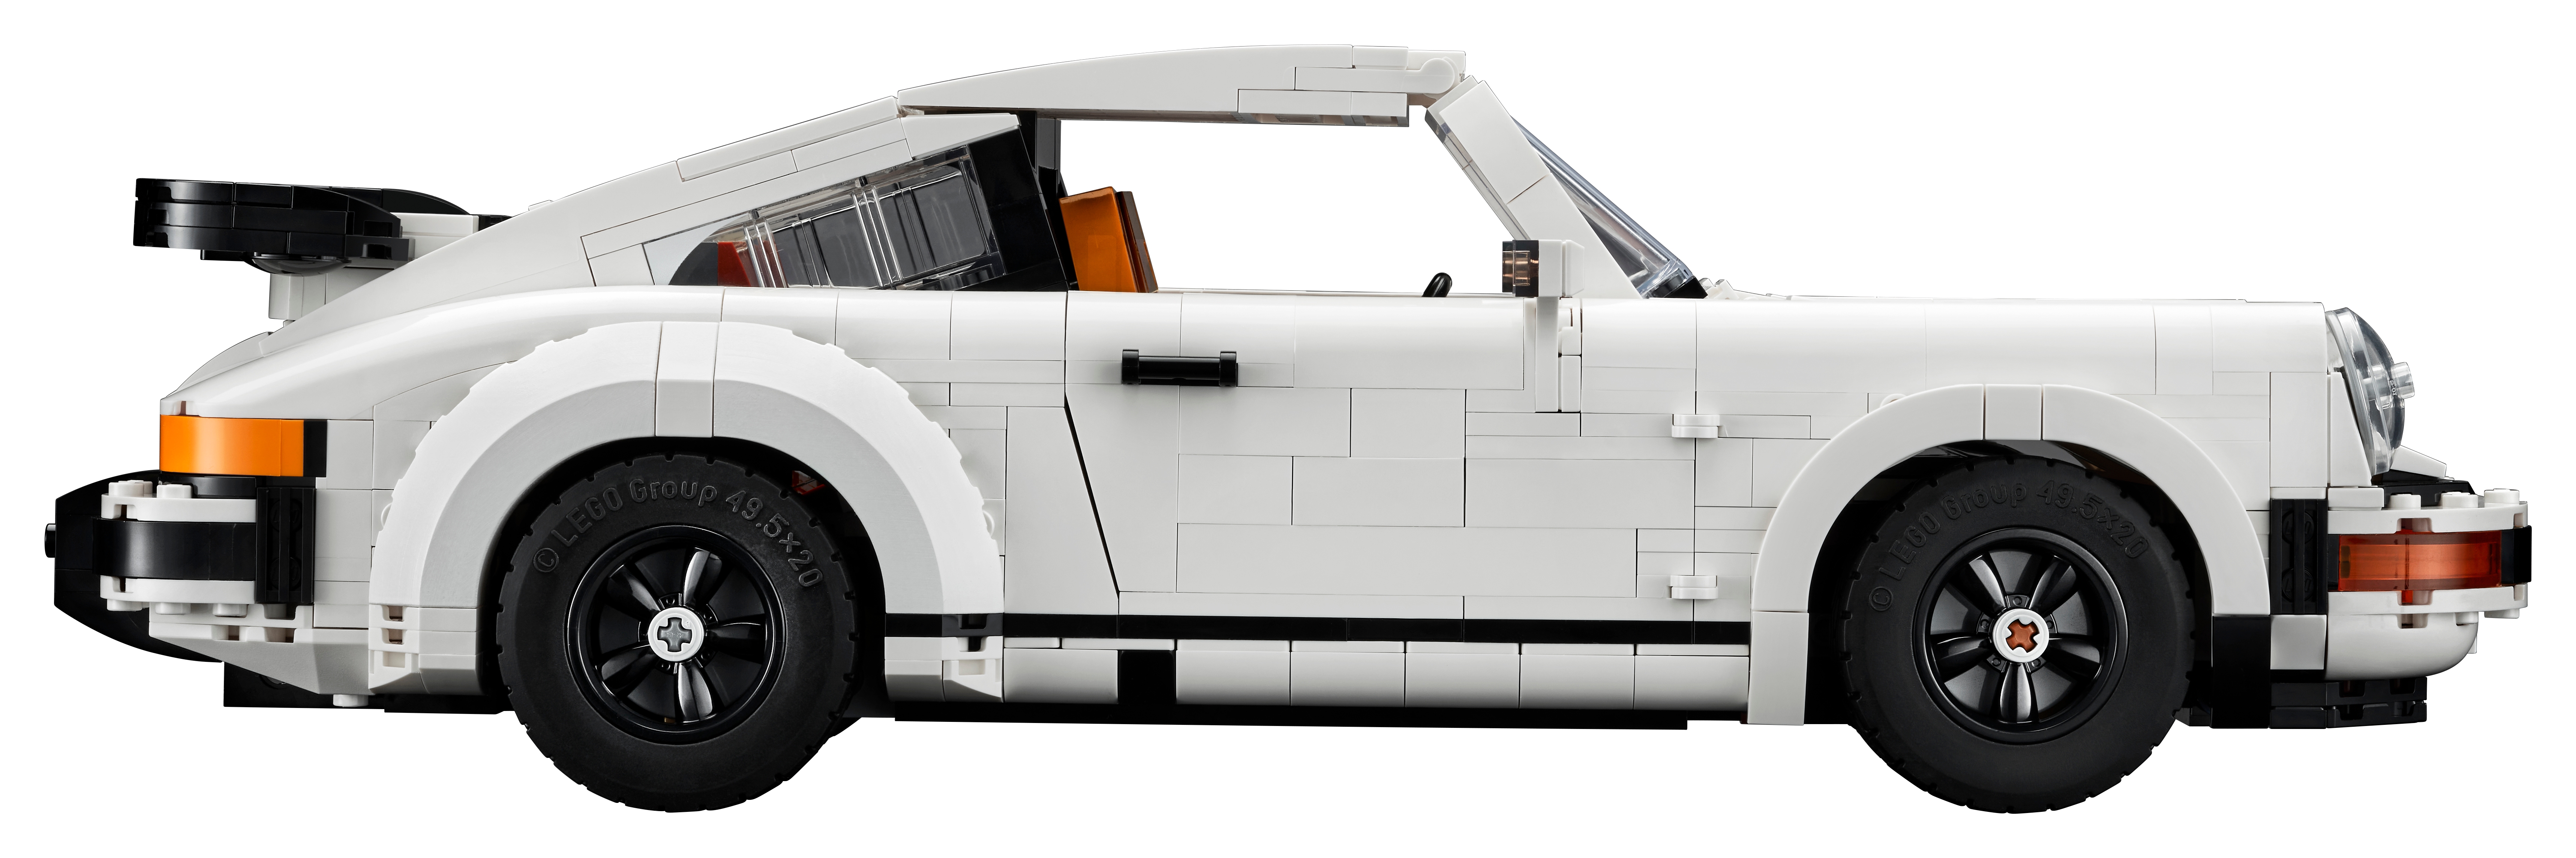 LEGO Porsche 10295 Porsche 911, Commandez facilement en ligne